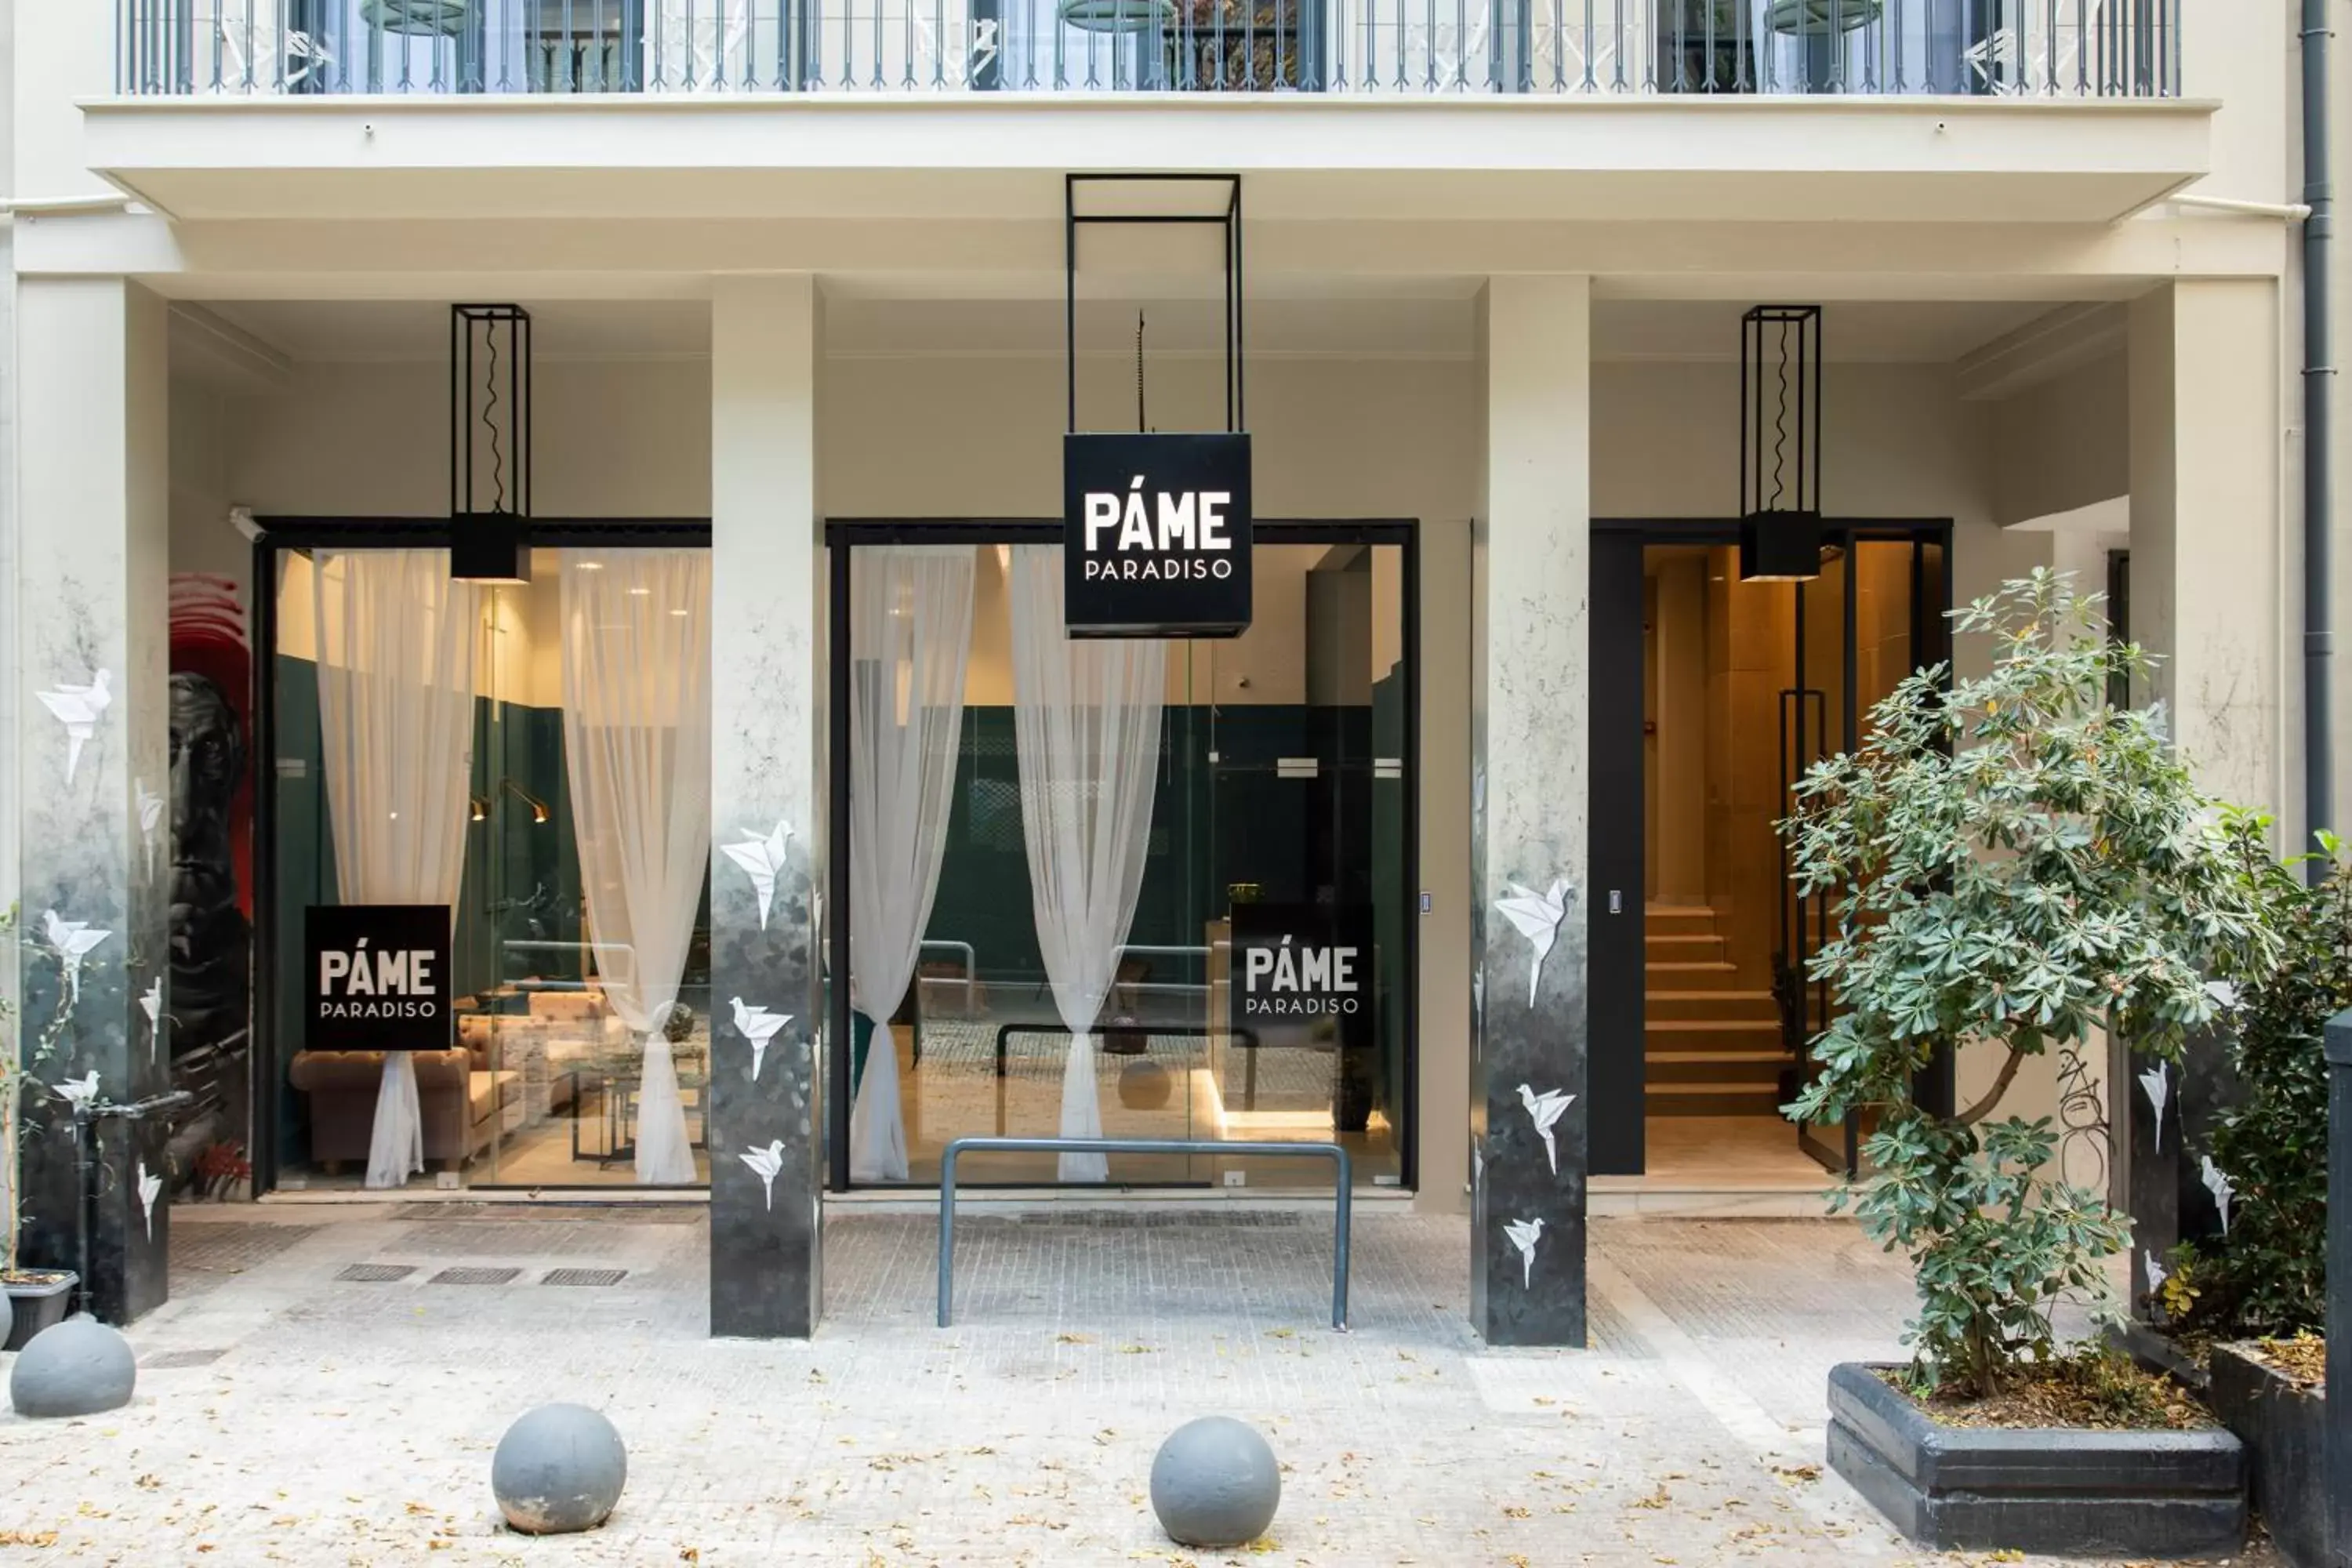 Facade/entrance in PAME Paradiso